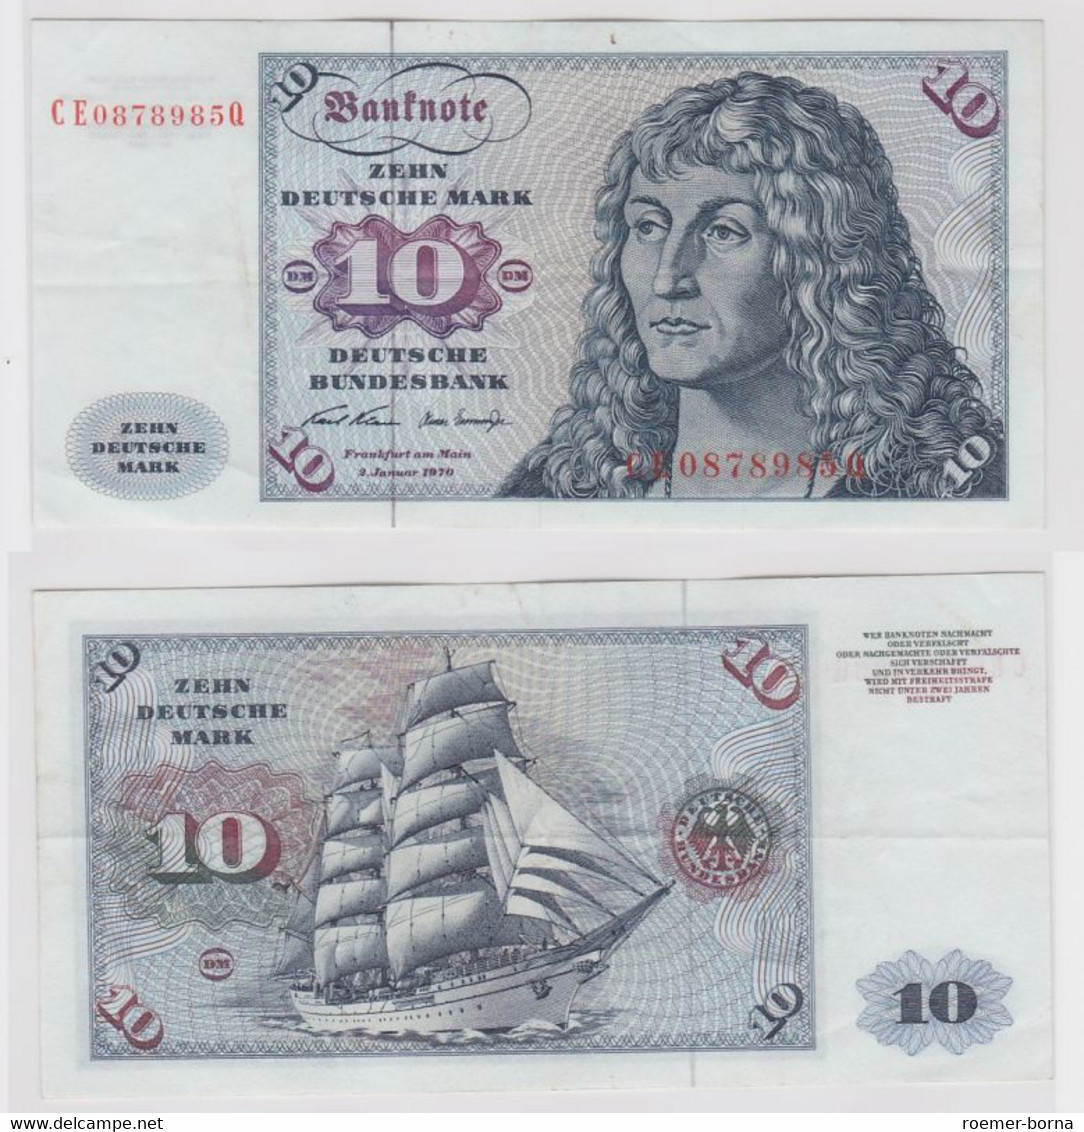 T146907 Banknote 10 DM Deutsche Mark Ro. 270b Schein 2.Jan. 1970 KN CE 0878985 Q - 10 DM